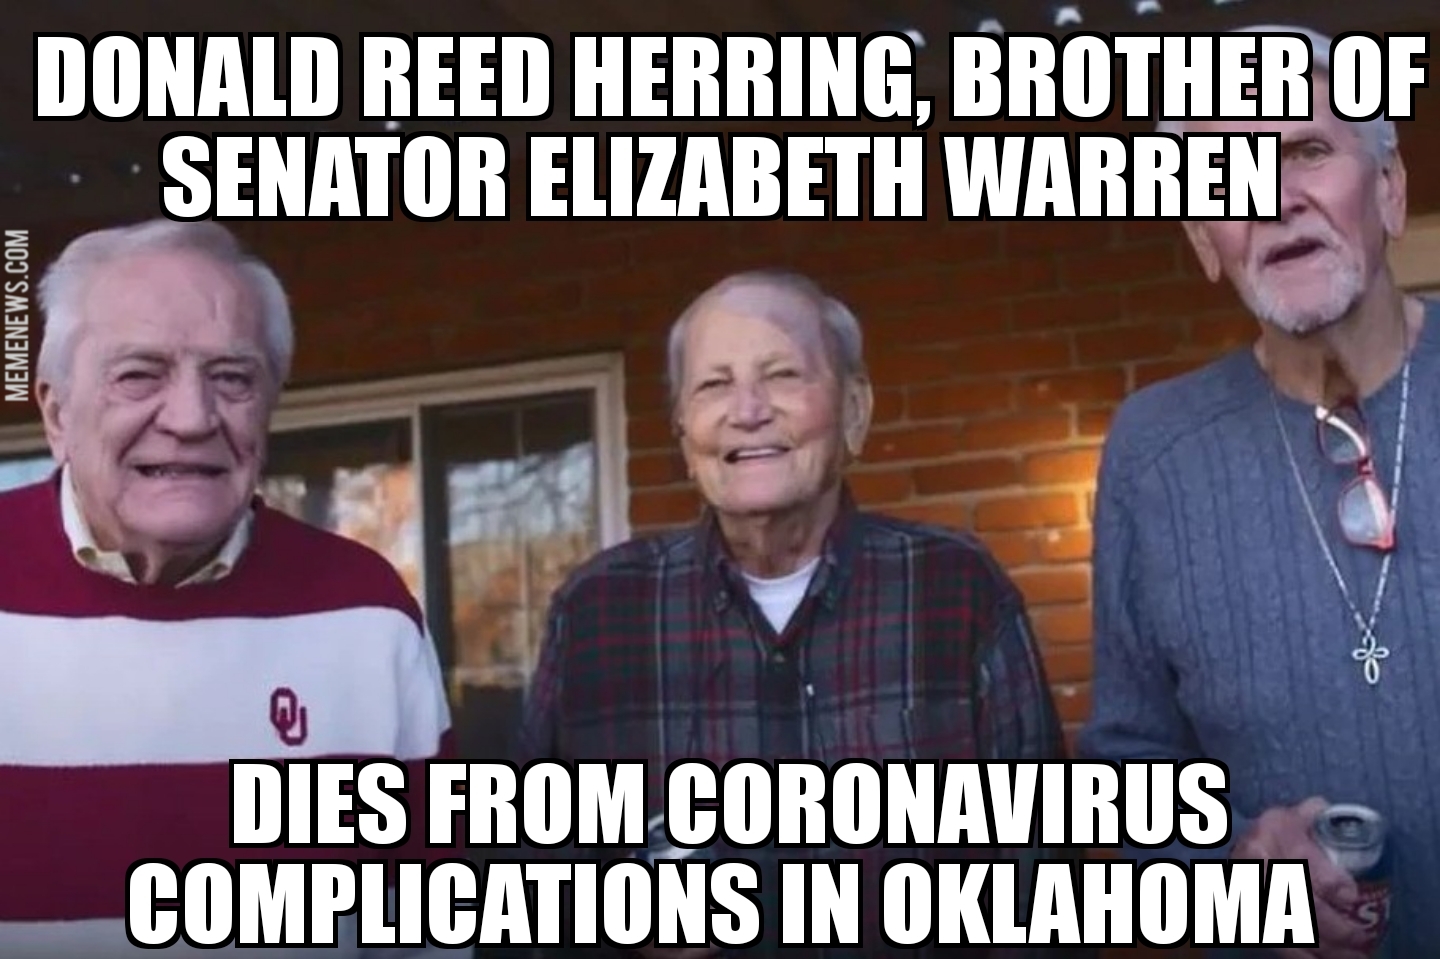 Elizabeth Warren’s brother dies of coronavirus